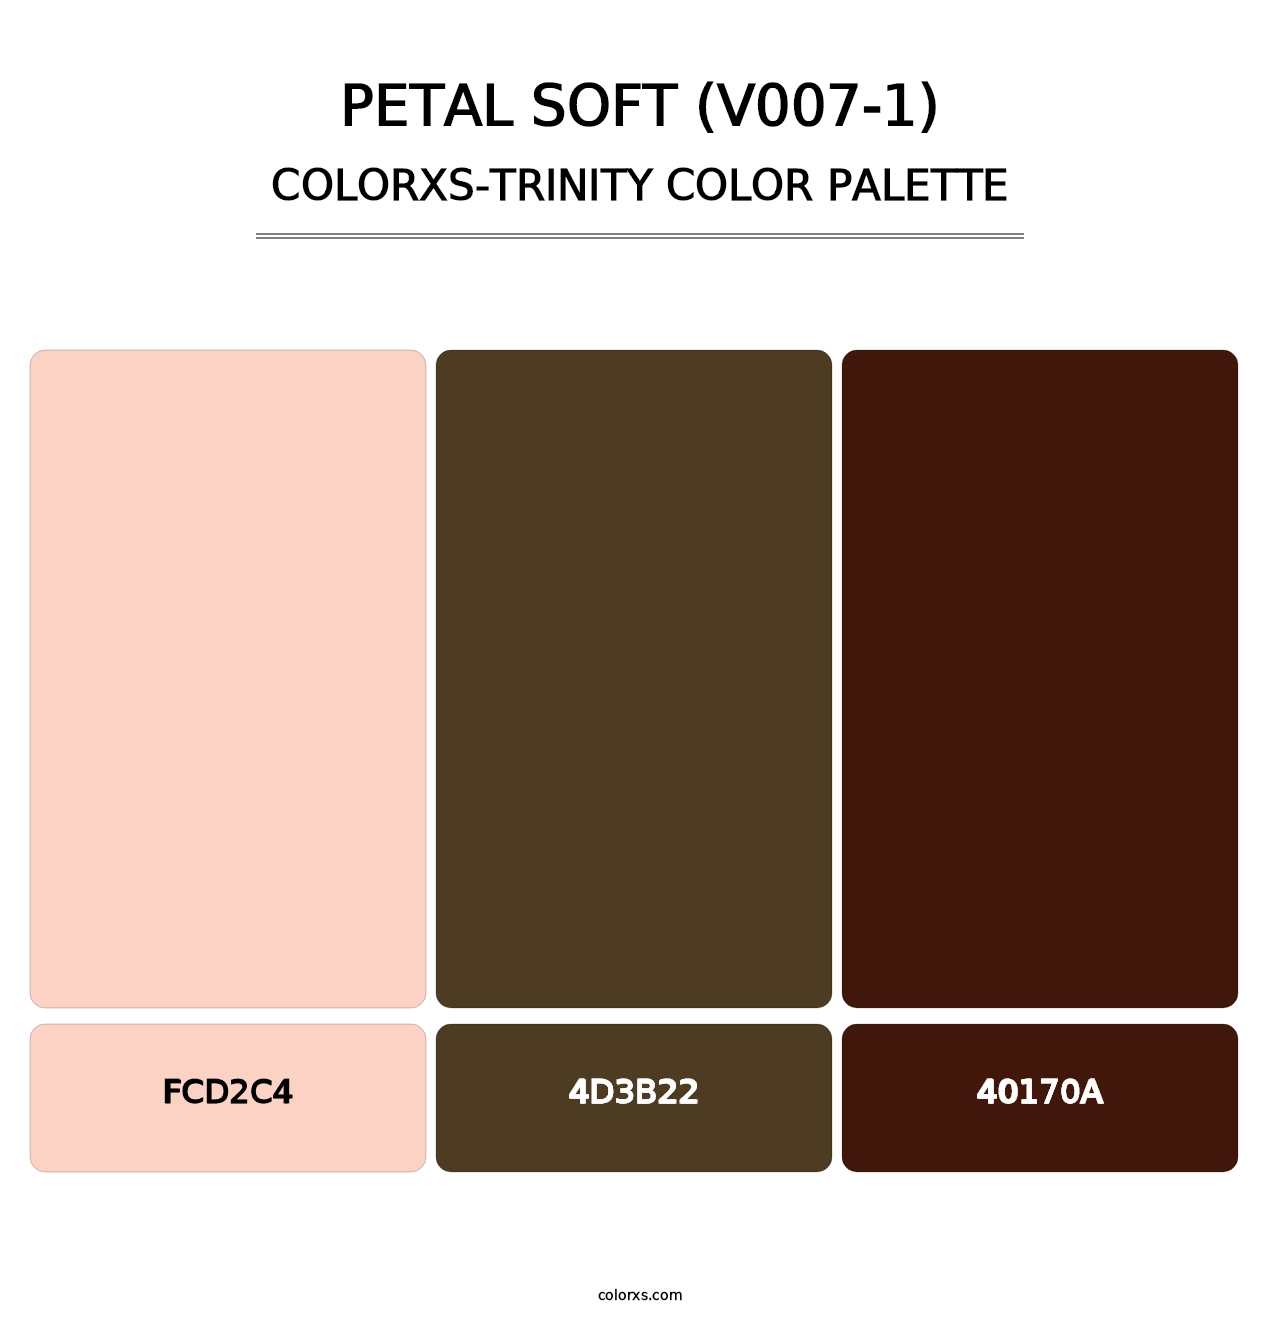 Petal Soft (V007-1) - Colorxs Trinity Palette